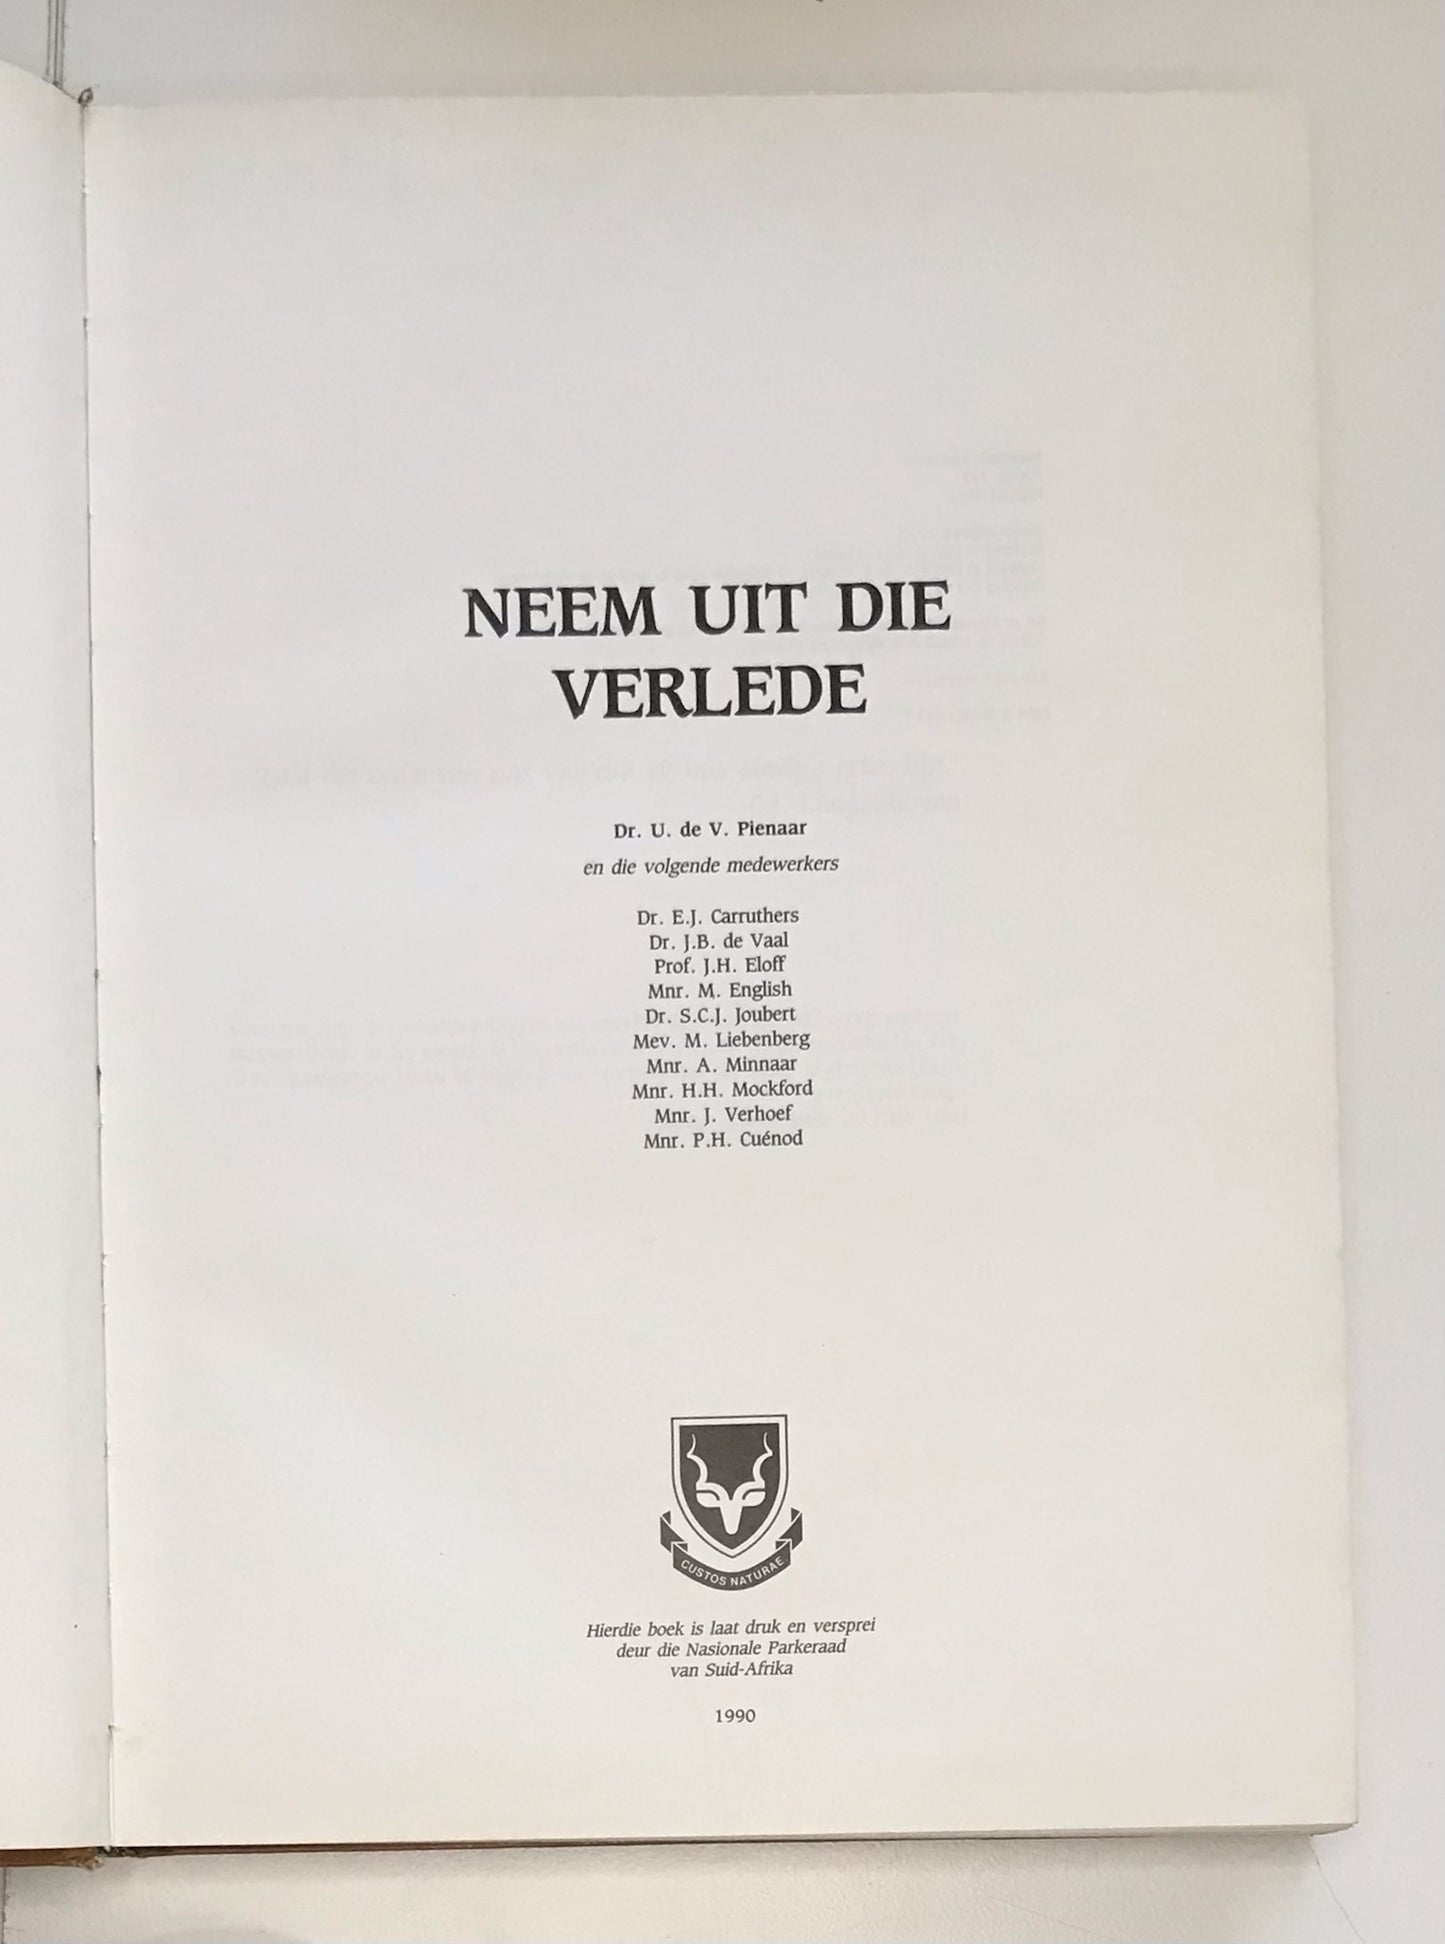 Neem uit die verlede - U. de V. Pienaar (First edition)